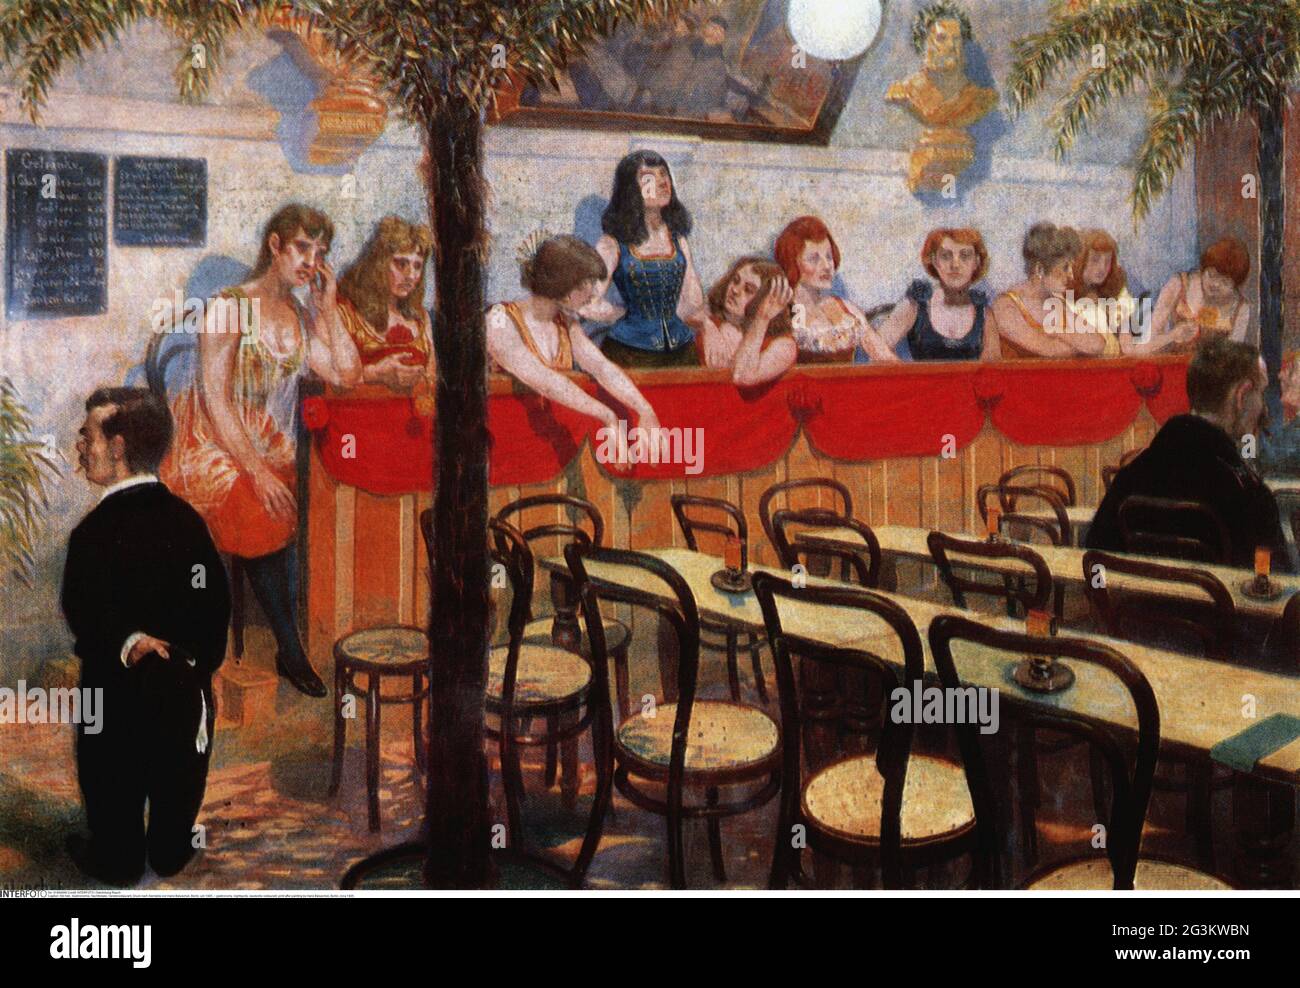 Gastronomie, boîtes de nuit, restaurant vaudeville, imprimé après peinture par Hans Baluschek, Berlin, vers 1905, LE DROIT D'AUTEUR DE L'ARTISTE N'A PAS À ÊTRE AUTORISÉ Banque D'Images